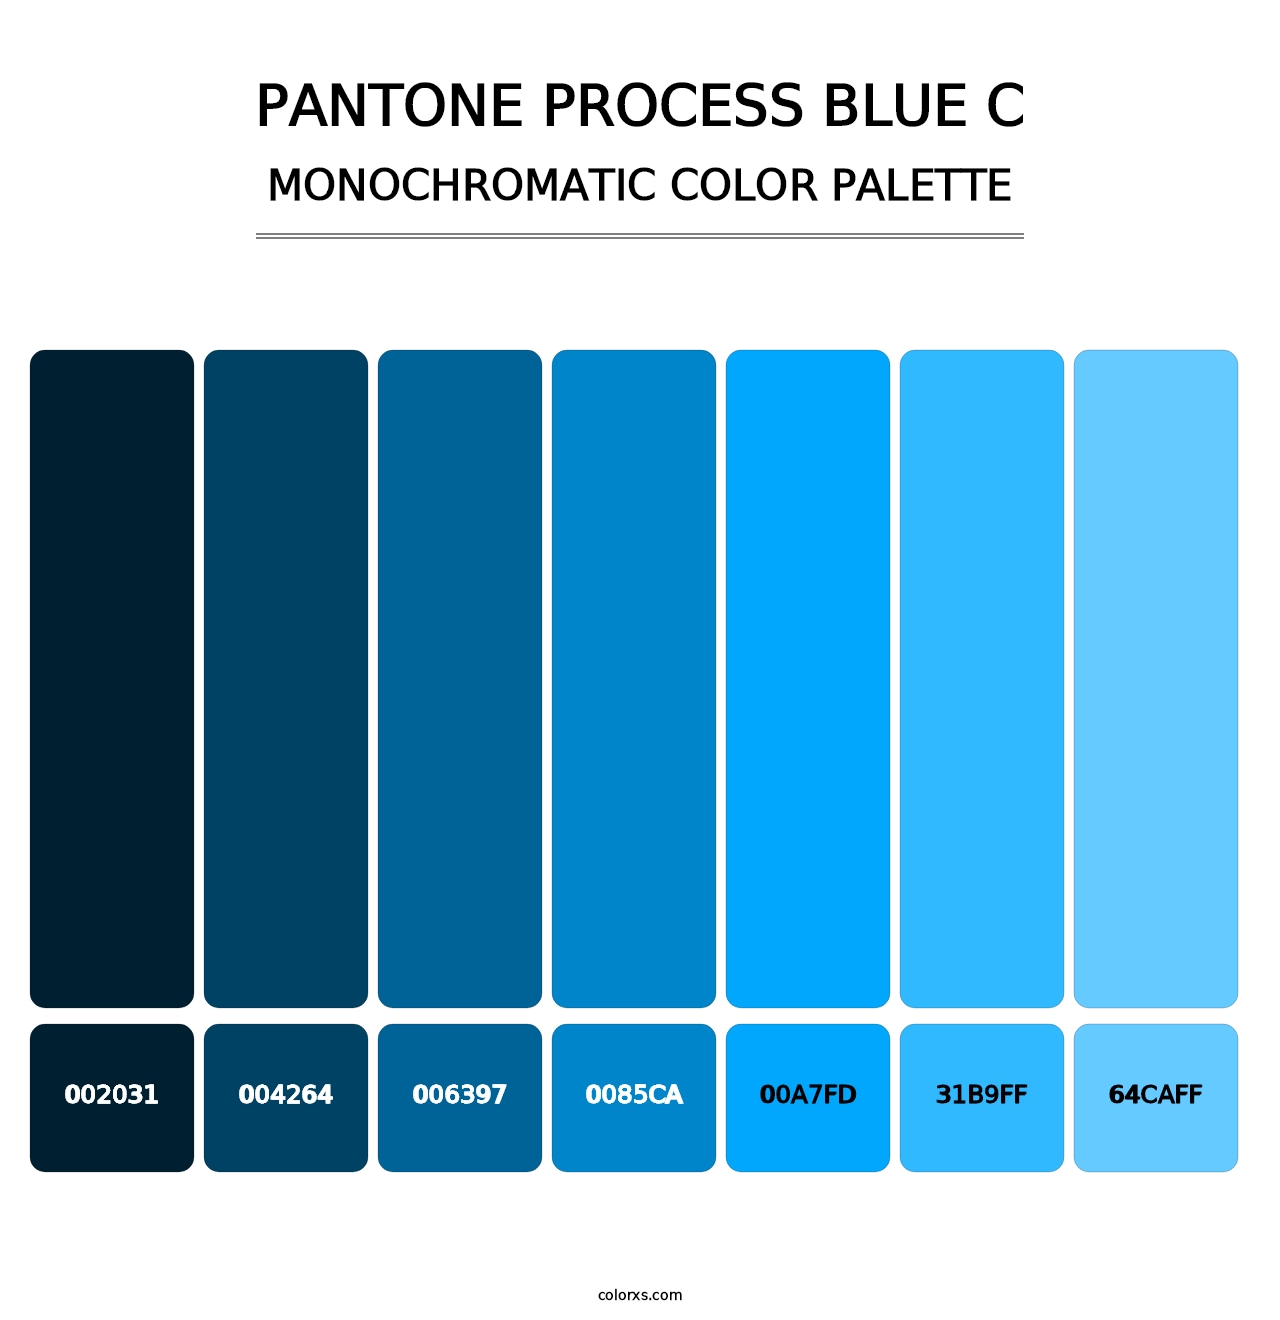 PANTONE Process Blue C - Monochromatic Color Palette